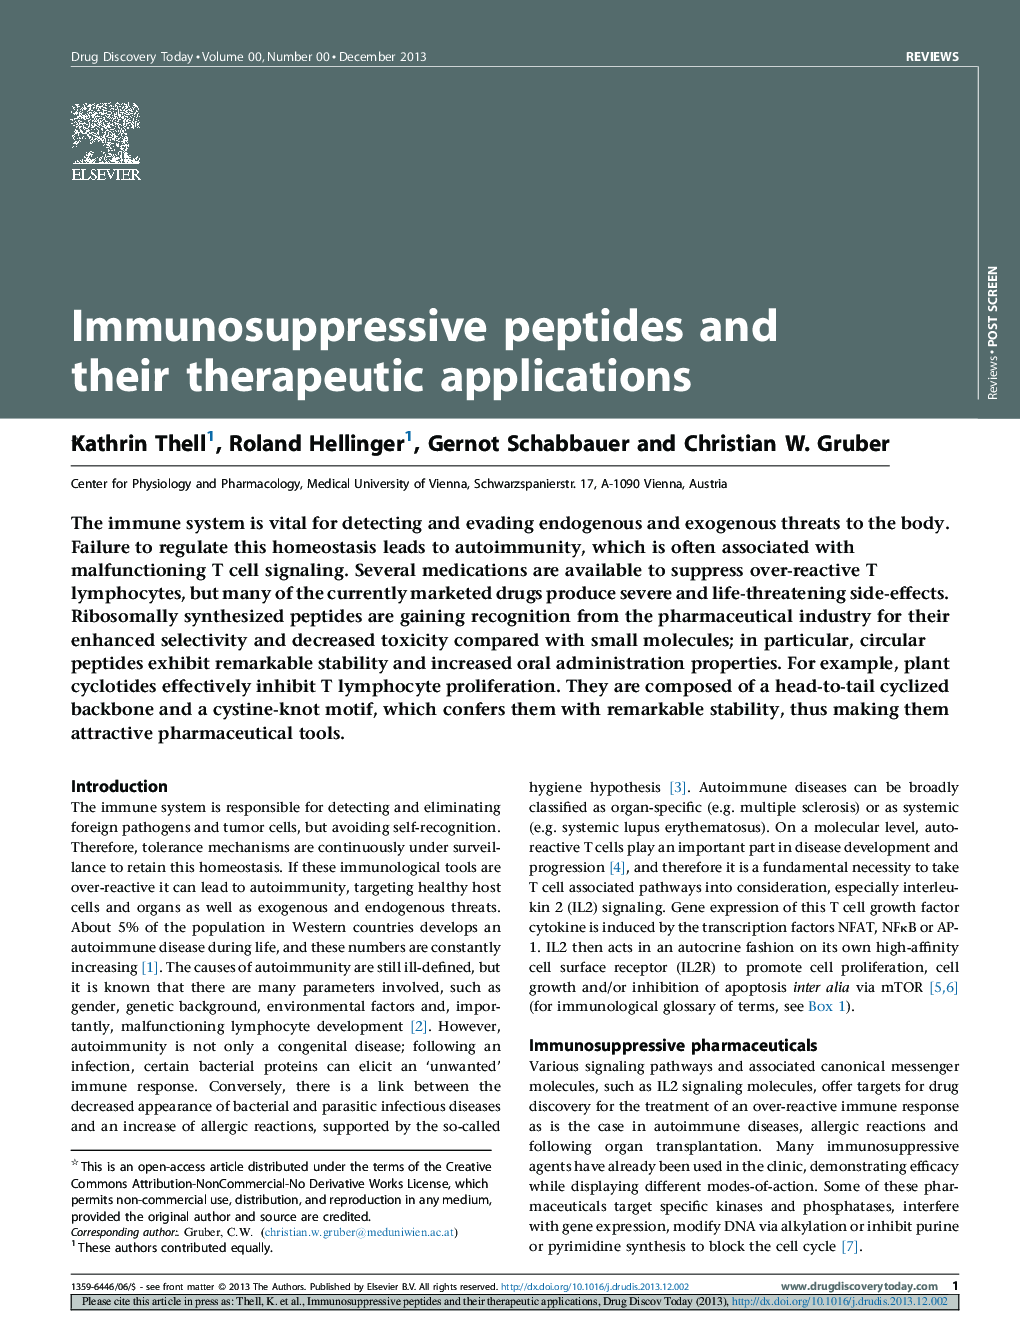 پپتیدهای ایمنی تخریب کننده و کاربردهای درمانی آنها 